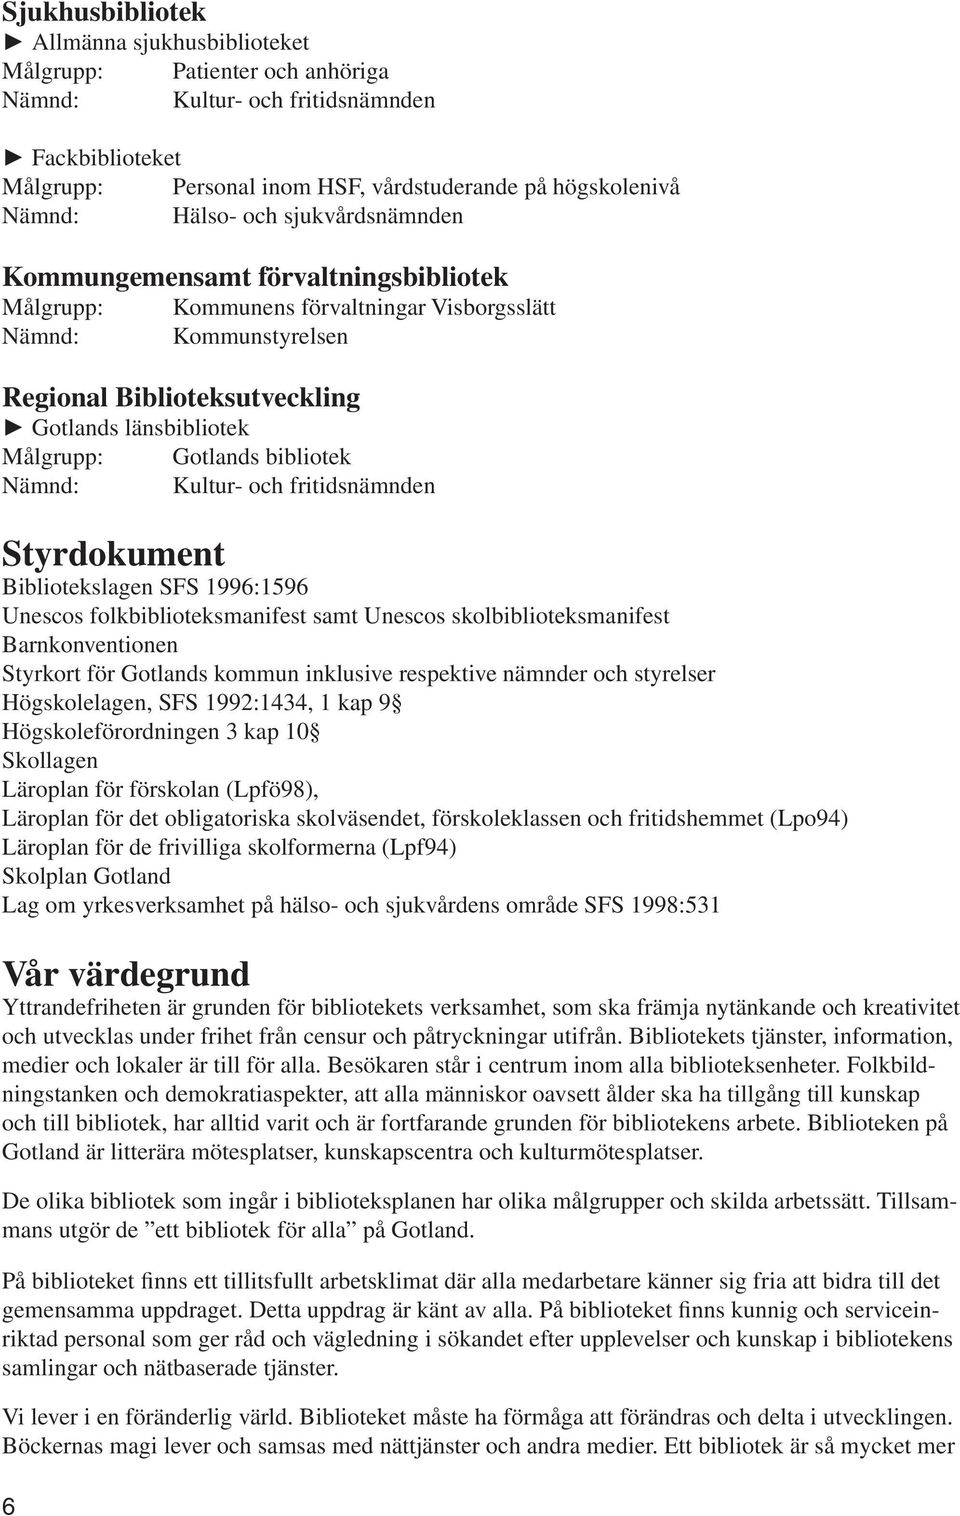 Gotlands bibliotek Nämnd: Kultur- och fritidsnämnden Styrdokument Bibliotekslagen SFS 1996:1596 Unescos folkbiblioteksmanifest samt Unescos skolbiblioteksmanifest Barnkonventionen Styrkort för